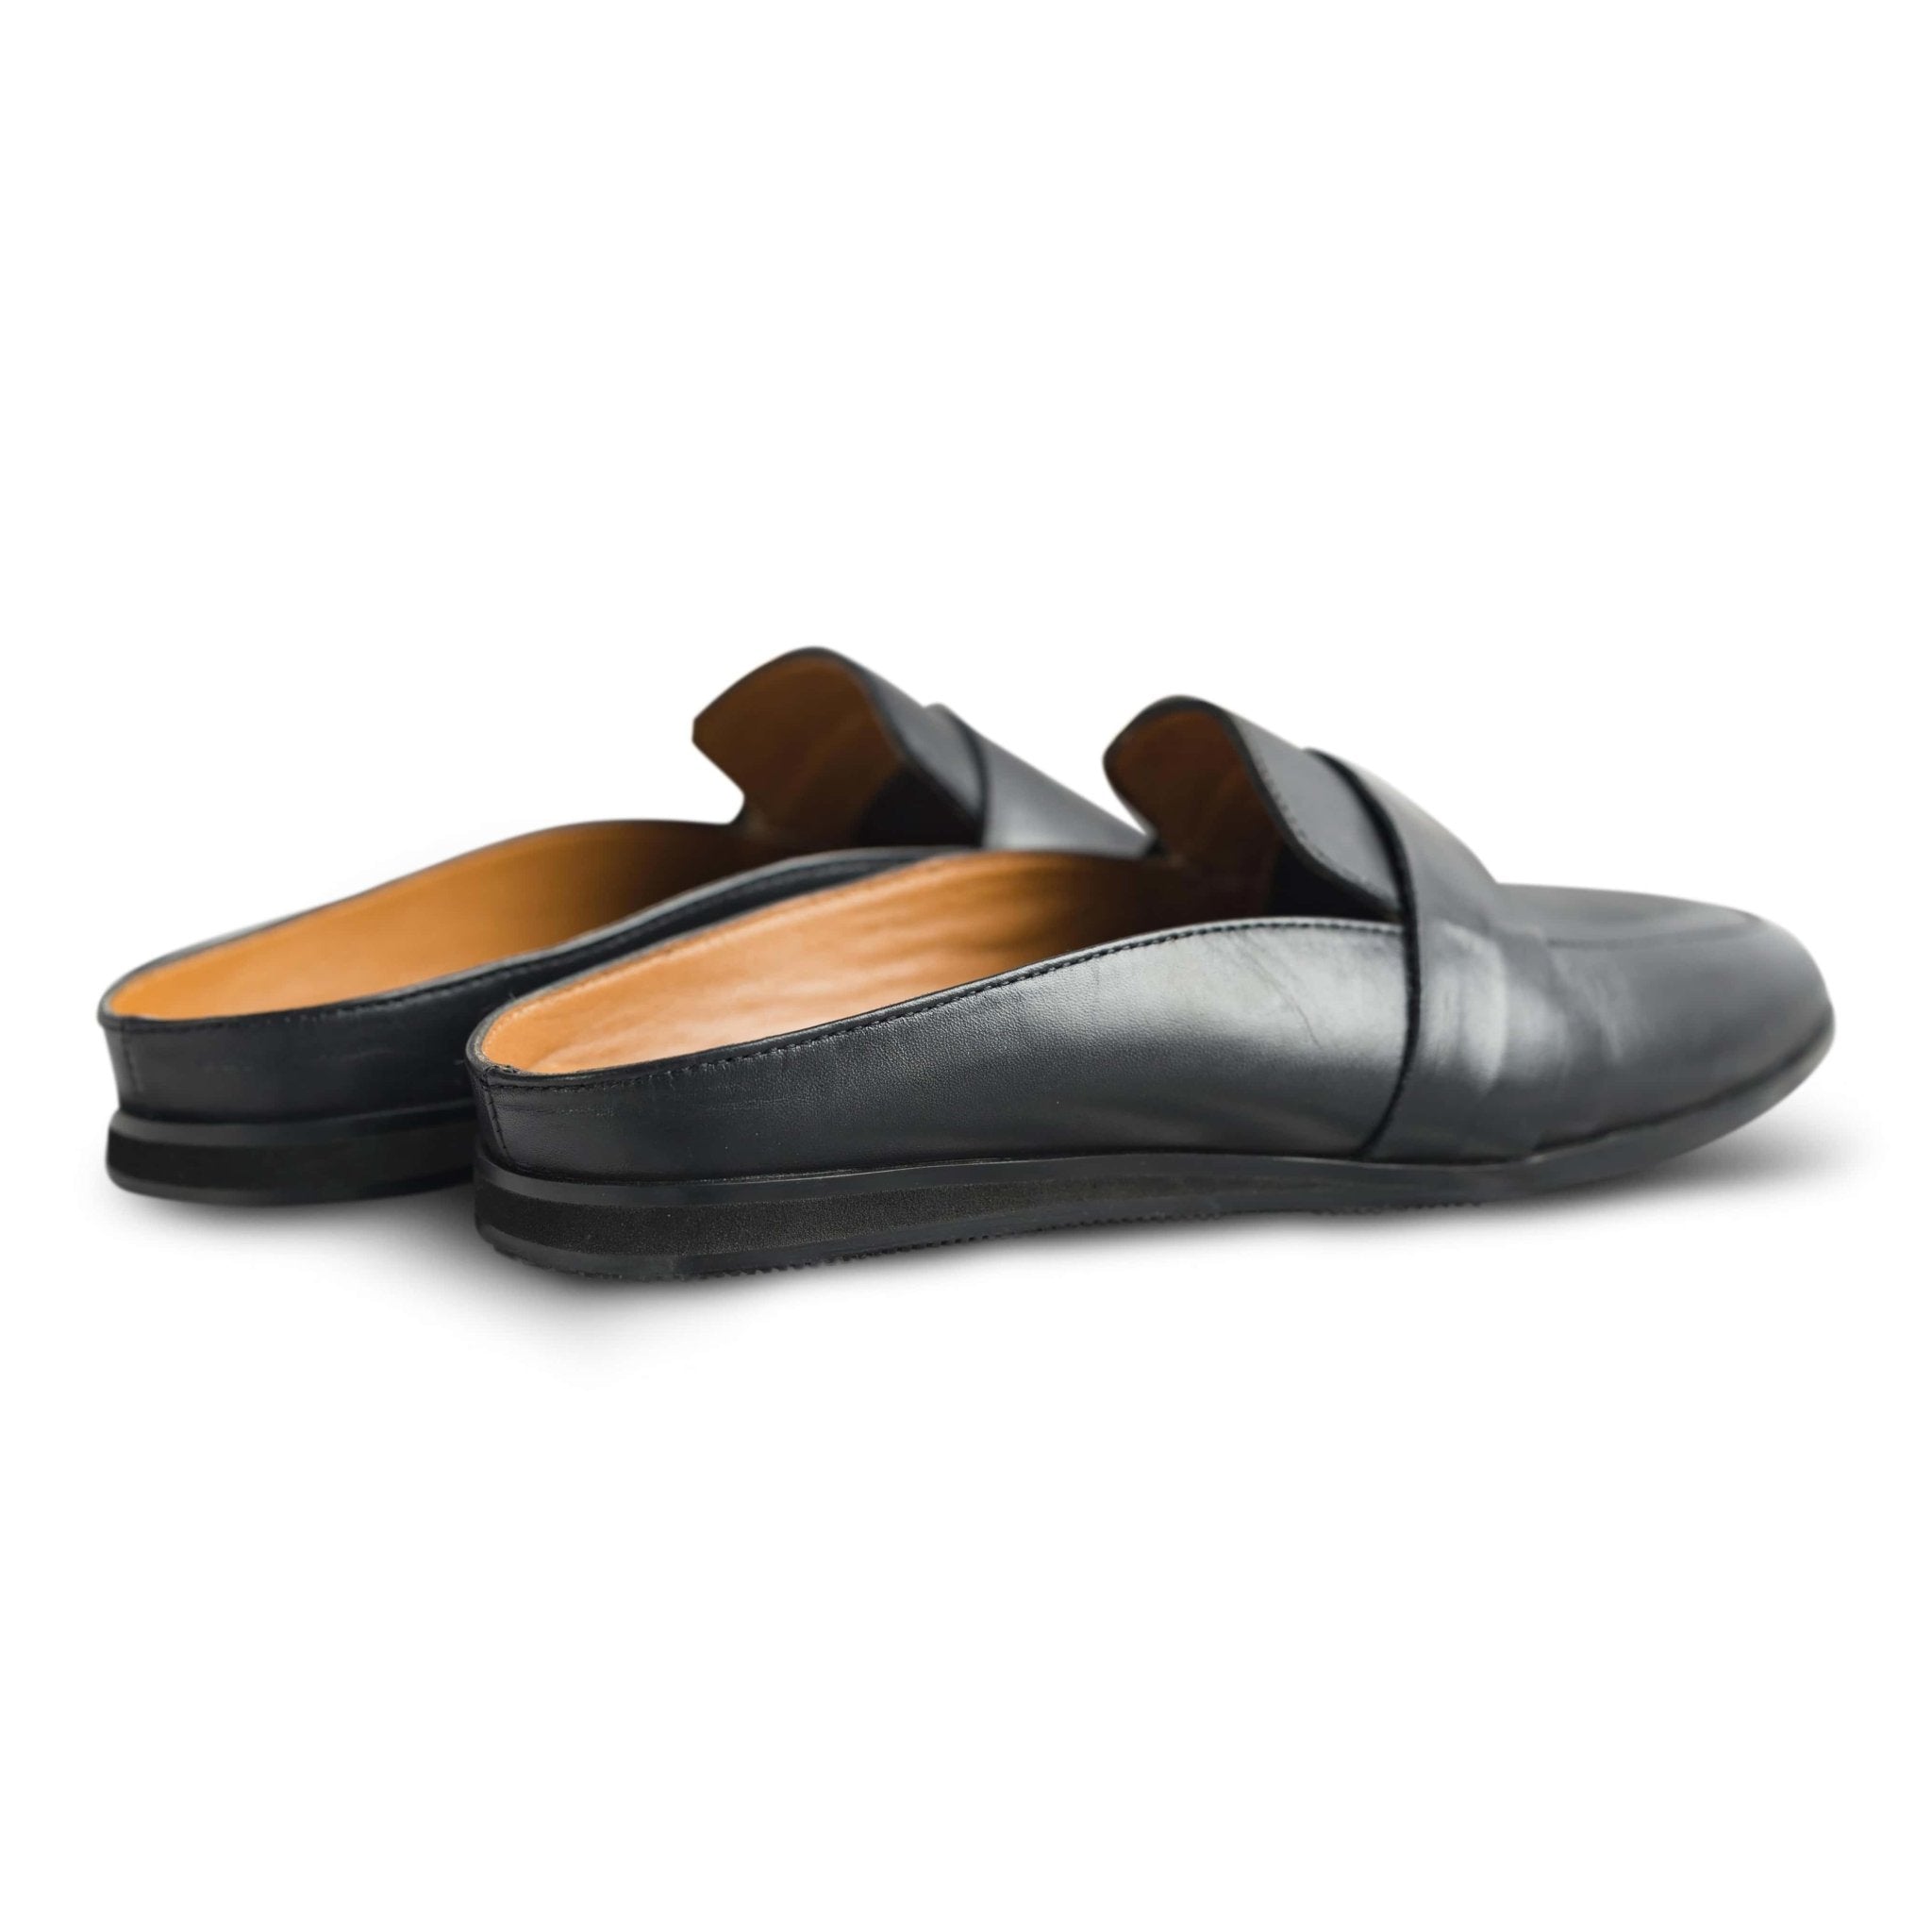 Hoffler Nera - dmodot Shoes